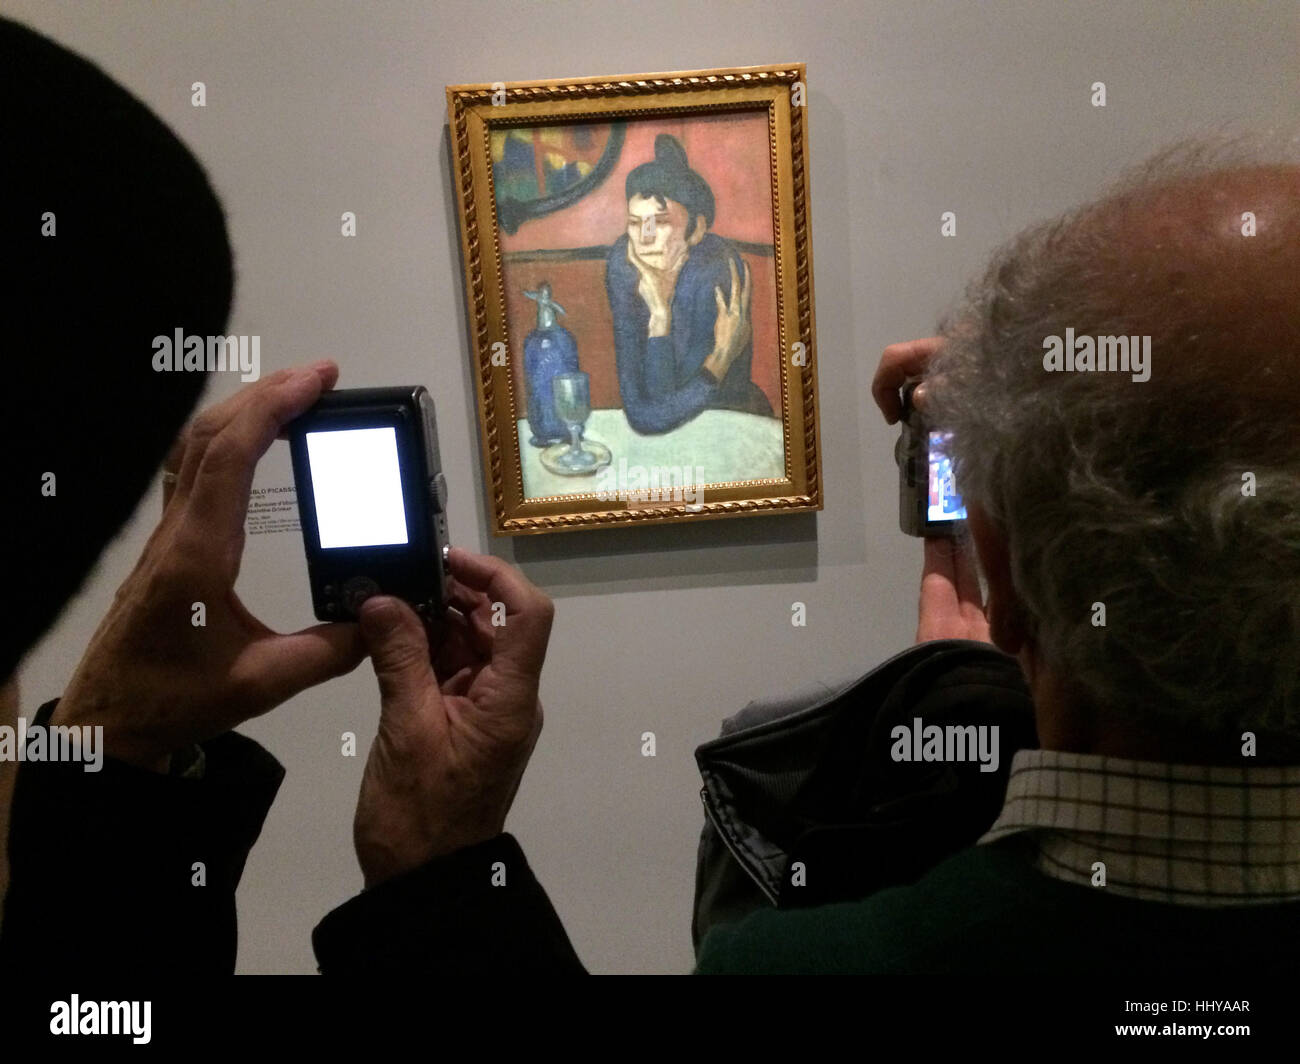 Les visiteurs utilisent des caméras pour photographier le tableau buveur d'Absinthe (1901) de Pablo Picasso présentés à l'exposition d'icônes de l'Art Moderne à partir de la Collection Chtchoukine) par la Fondation Louis Vuitton à Paris, France. L'exposition est présentée jusqu'au 5 mars 2017. Banque D'Images